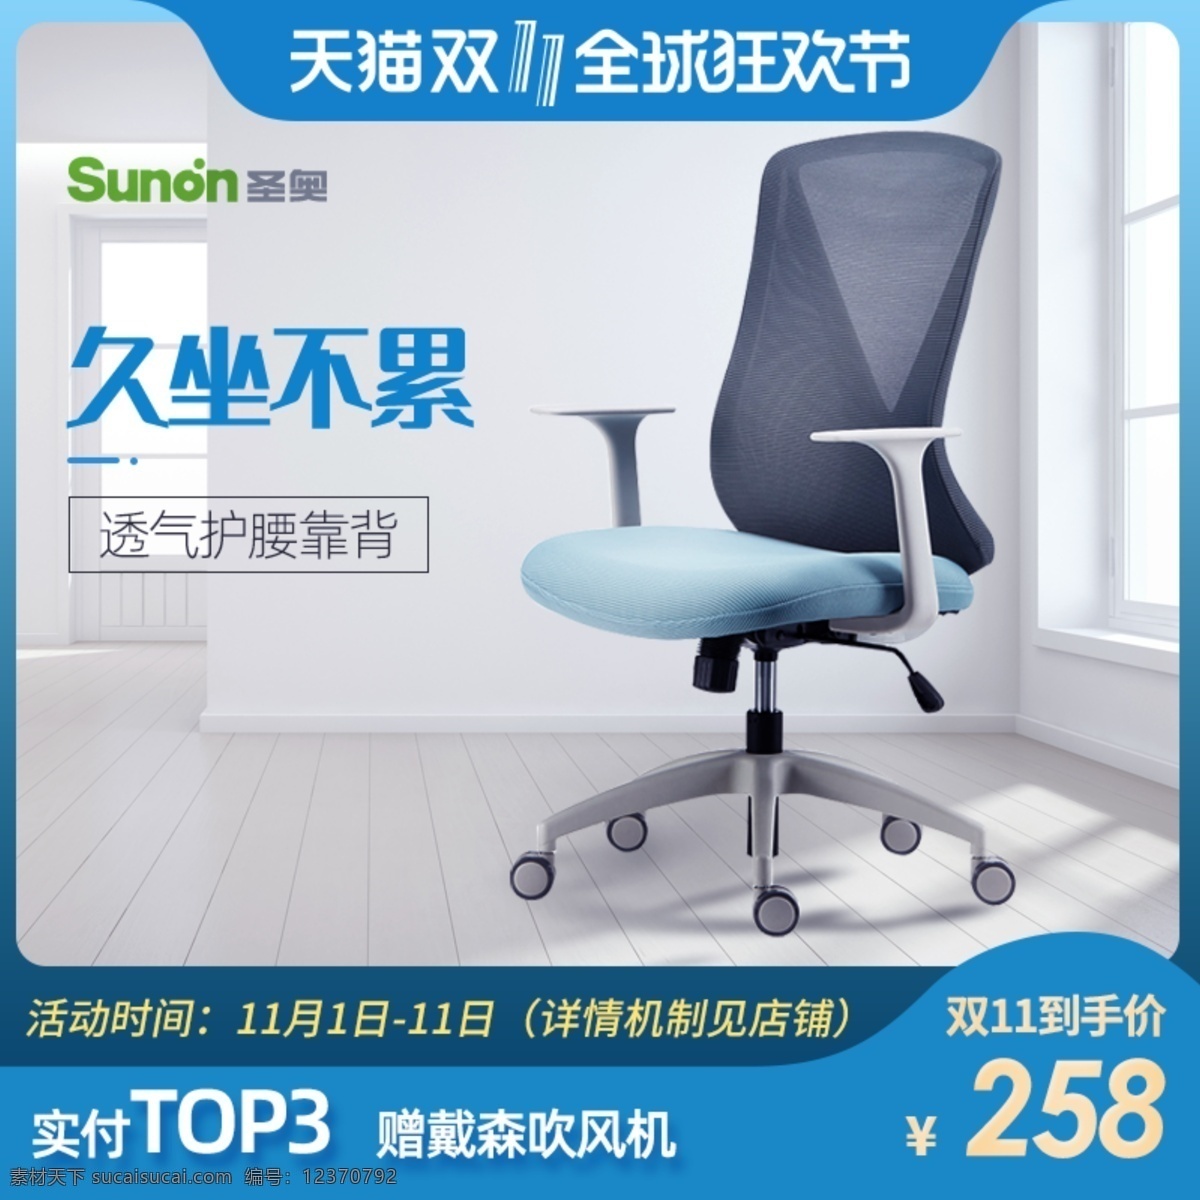 办公椅直通车 模板 办公椅 直通车 双十一 狂欢节 web 界面设计 中文模板